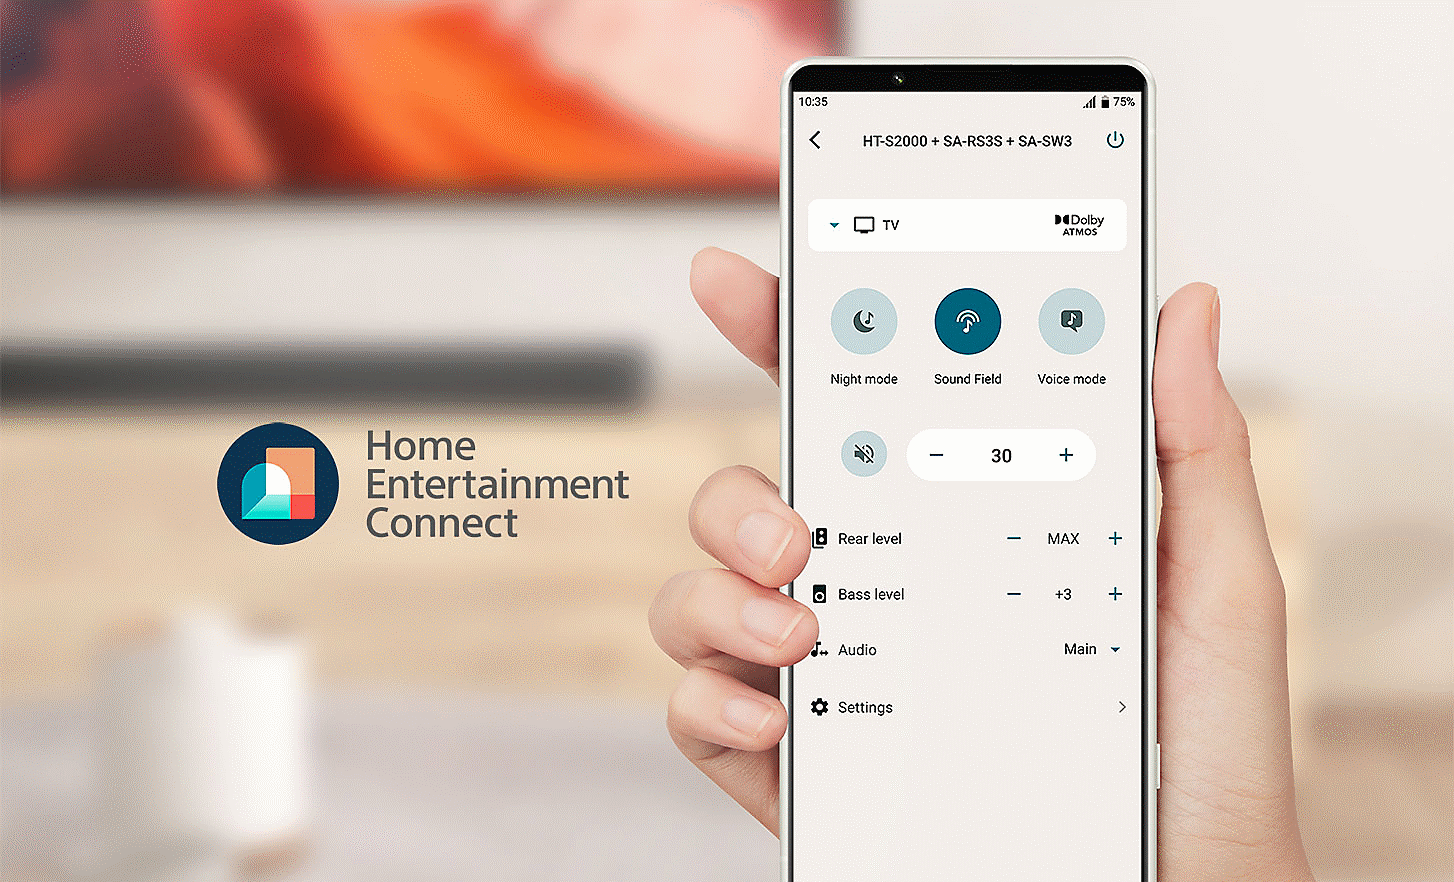 Snímek ruky držící mobilní telefon, na kterém je zobrazena nabídka nastavení s logem aplikace Home Entertainment Connect nalevo